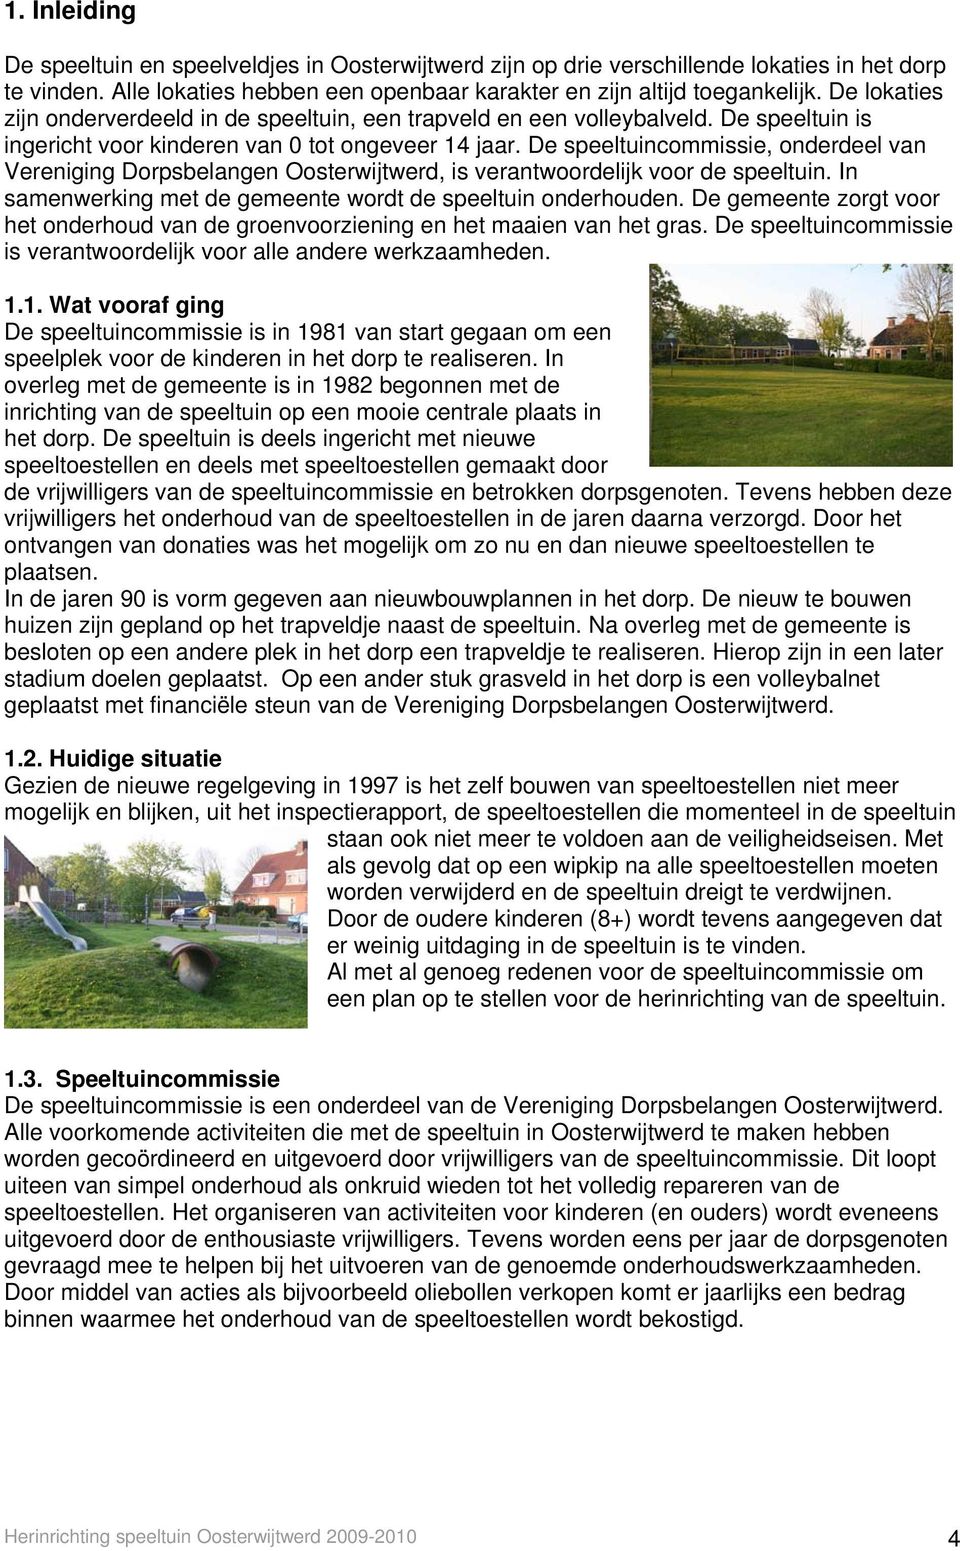 De speeltuincommissie, onderdeel van Vereniging Dorpsbelangen Oosterwijtwerd, is verantwoordelijk voor de speeltuin. In samenwerking met de gemeente wordt de speeltuin onderhouden.